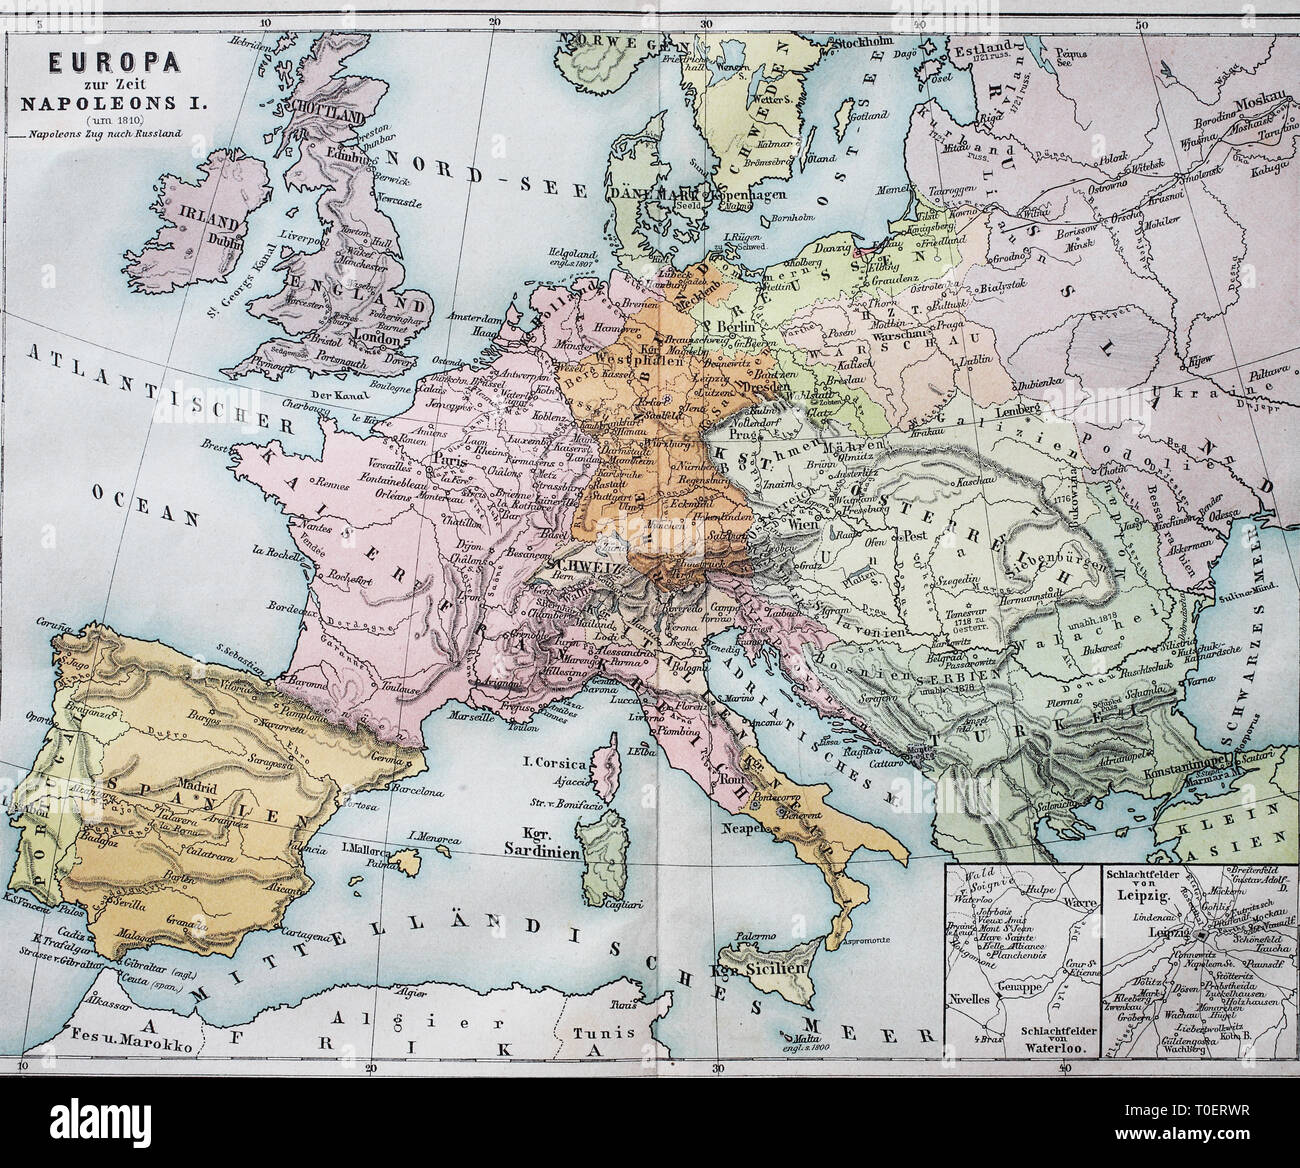 Historische Karte von Europa aus der Zeit von Napoleon I./Historische Landkarte von Europa zur Zeit von Napoleon I. Stockfoto